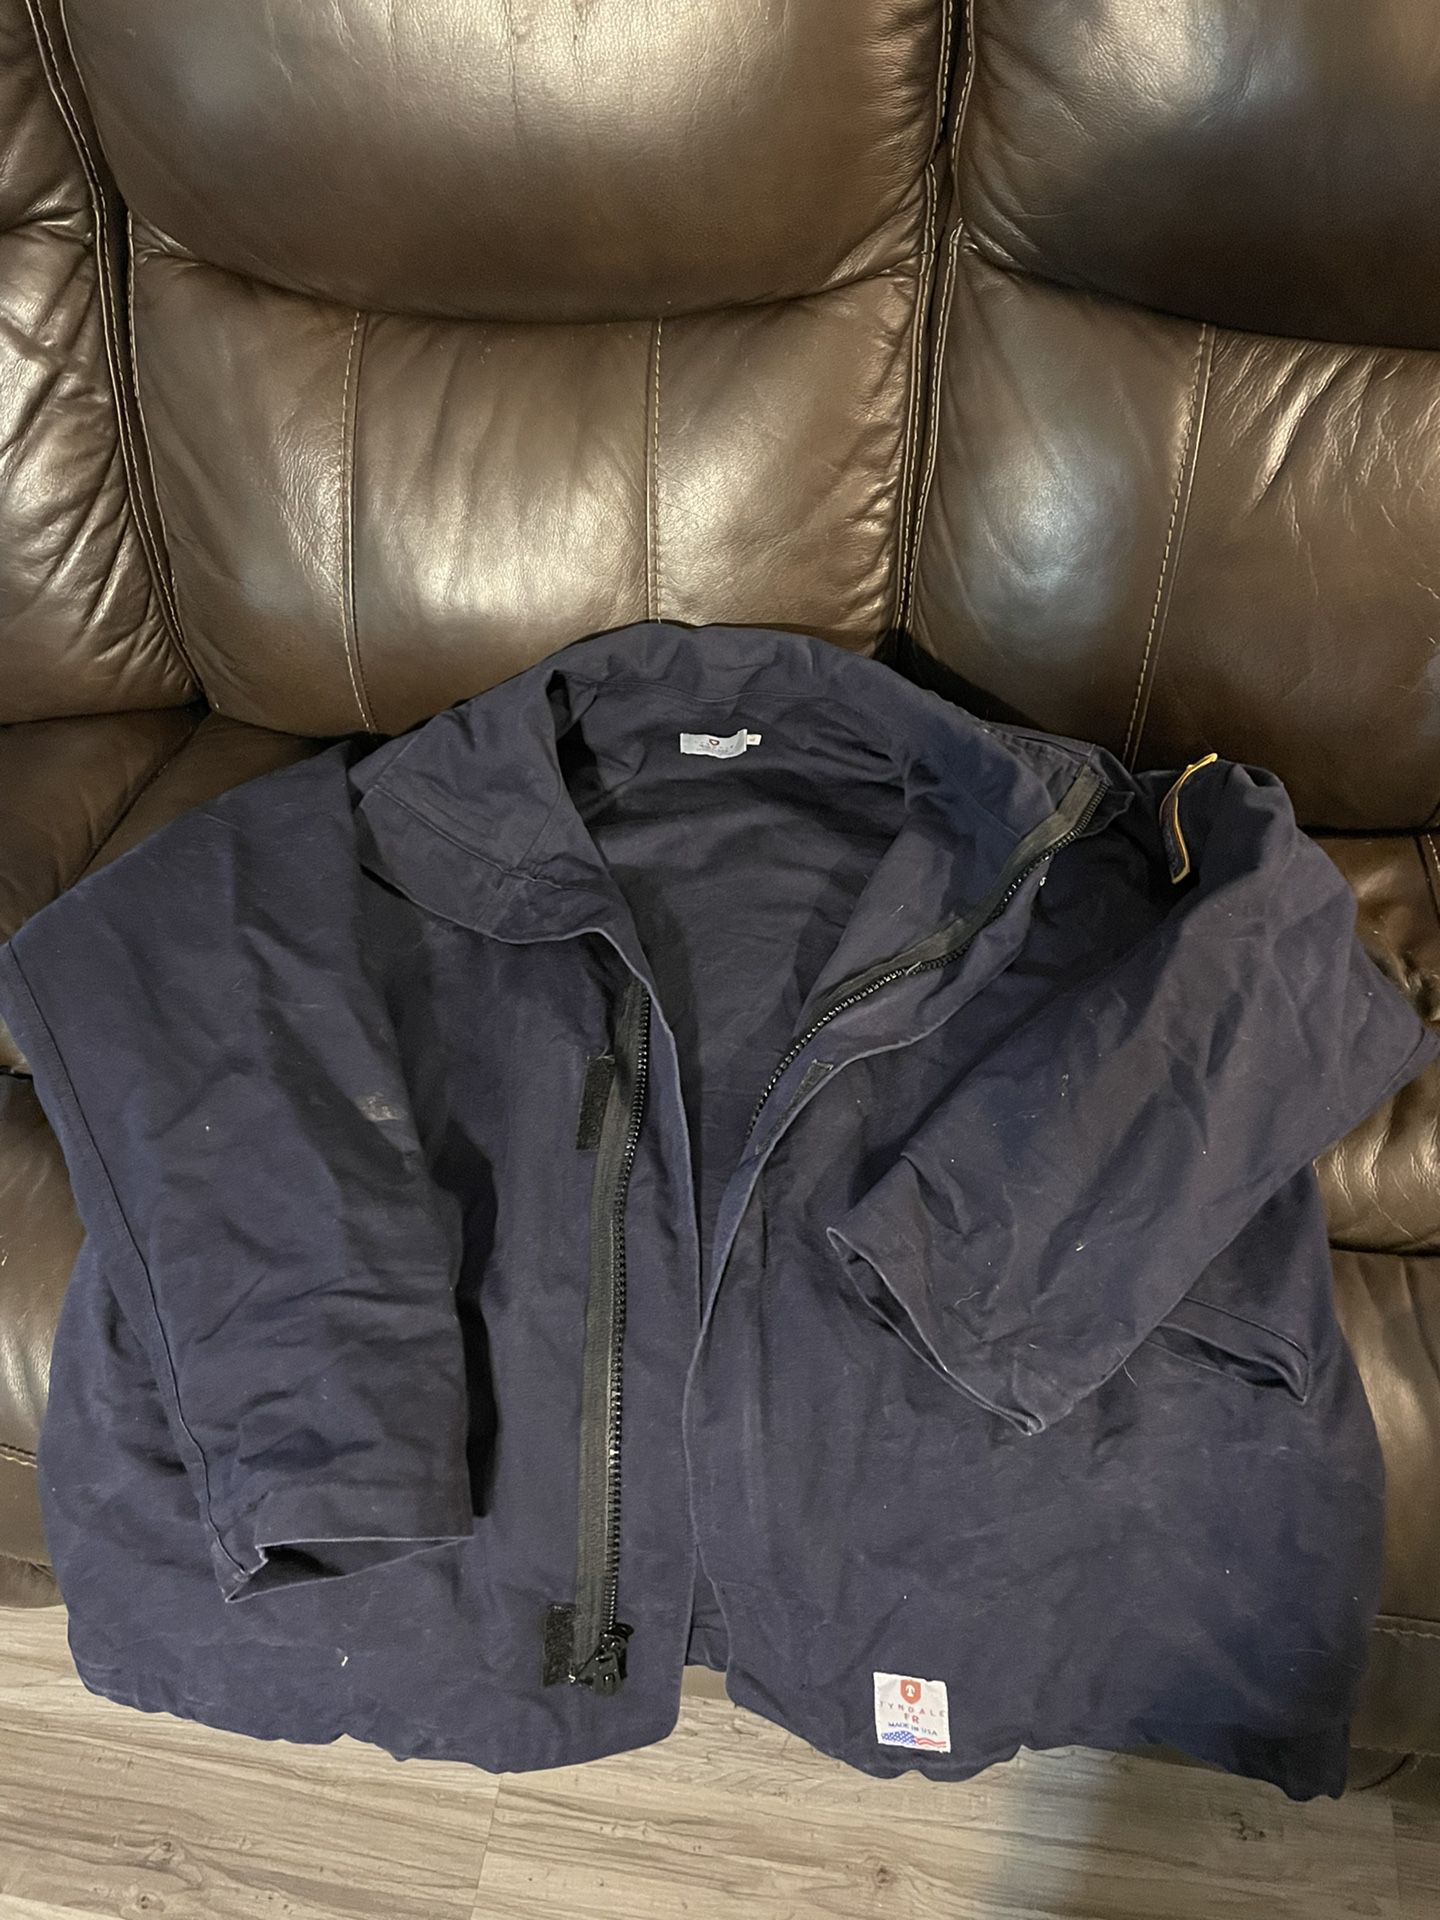 XL FRC Jacket